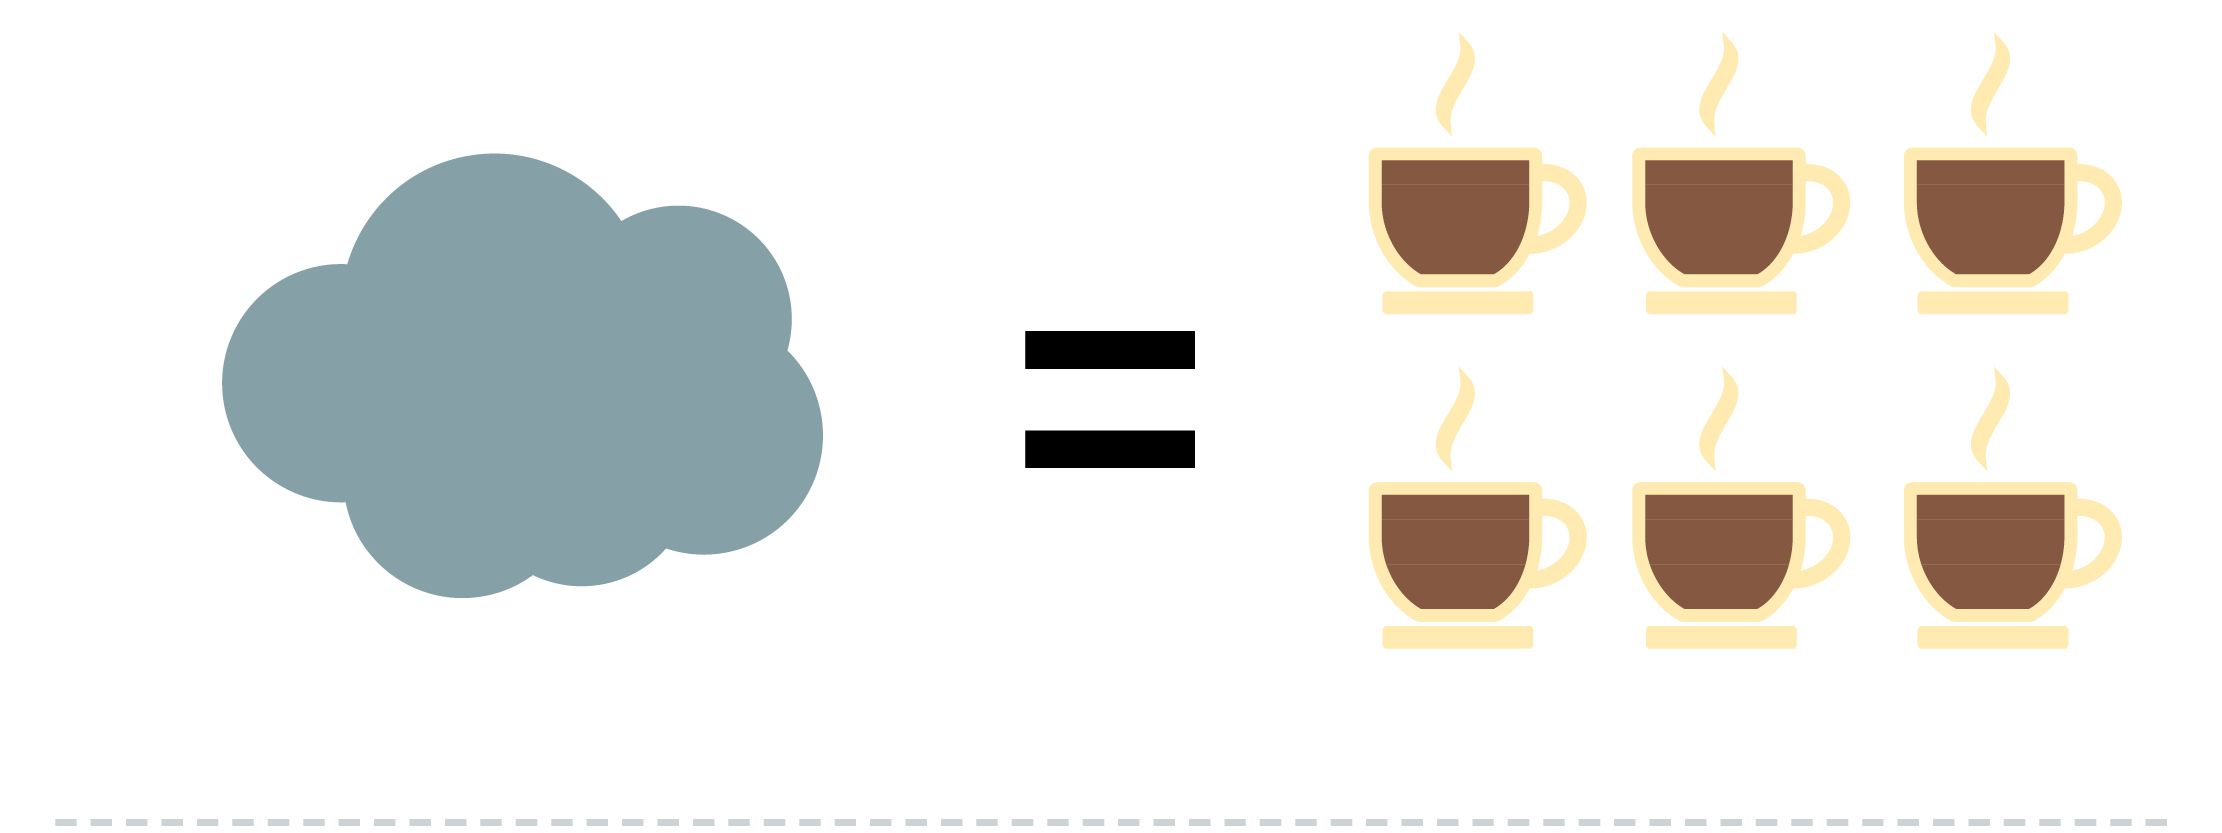 Ecobilans - Stockage cloud vs café